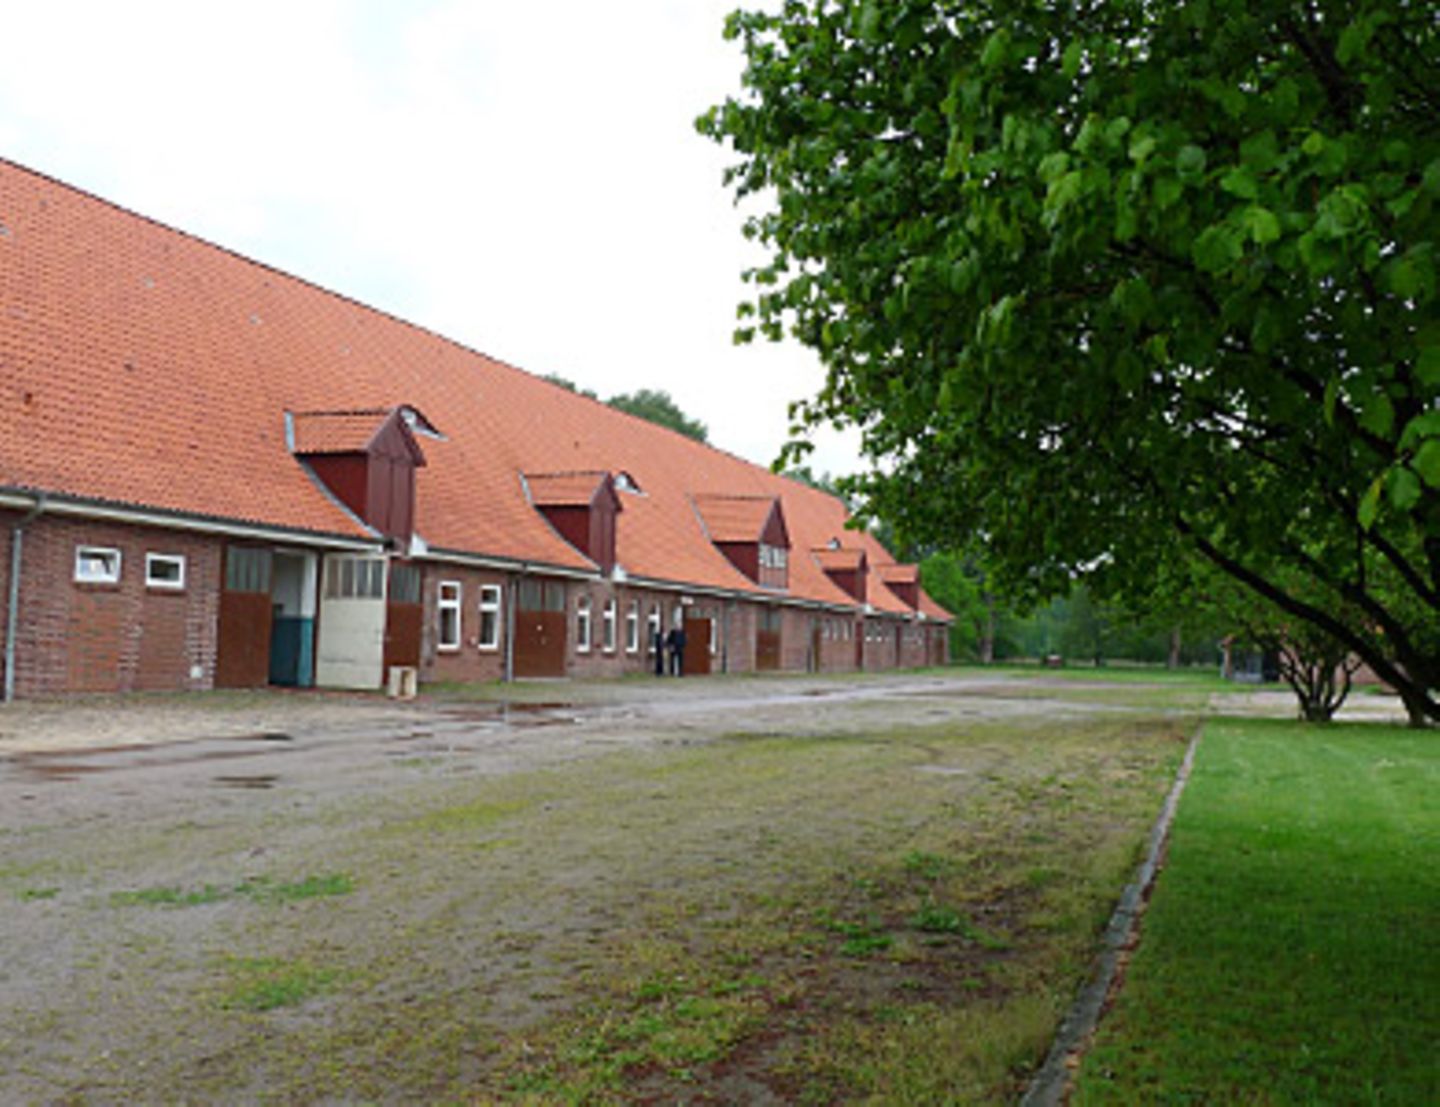 Die Werkstätten sind in alten Bauernhof-Gebäuden untergebracht und stehen unter Denkmalschutz.